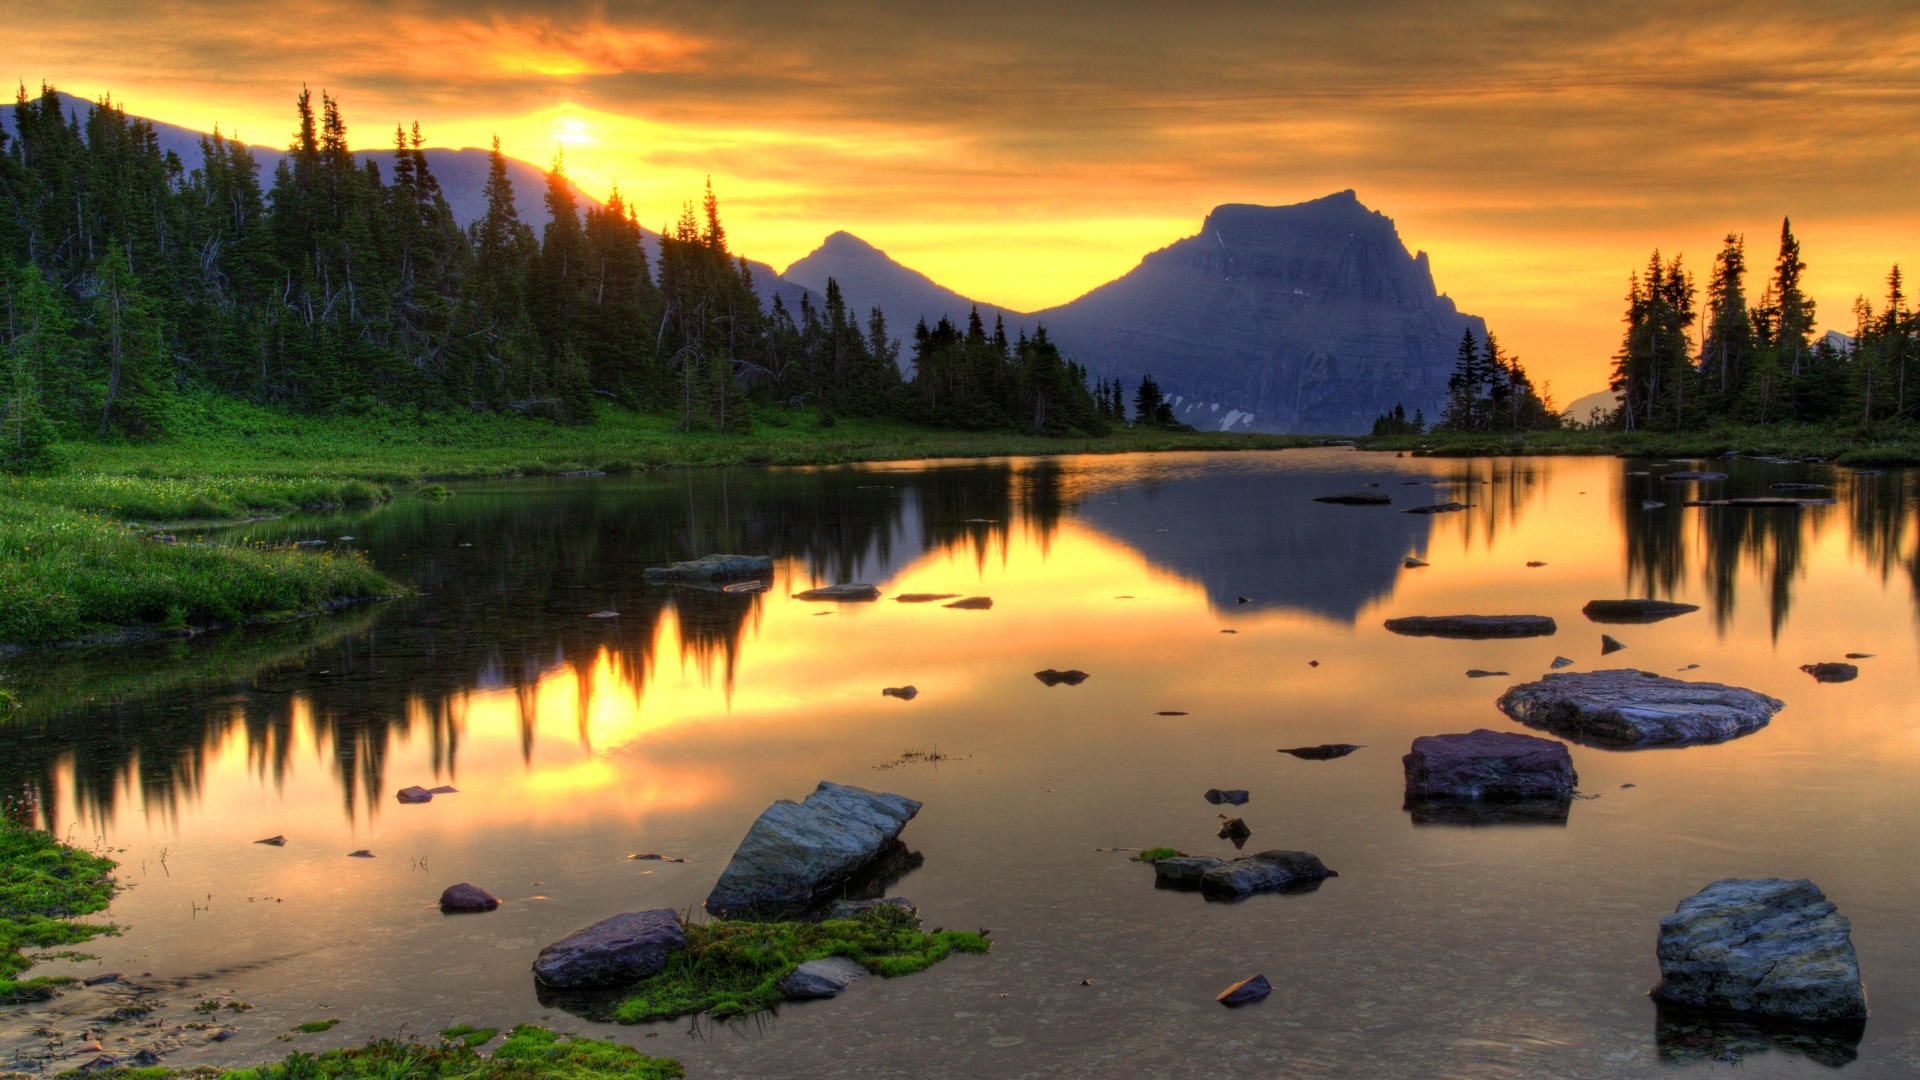 General 1920x1080 landscape mountains sunset lake Glacier National Park sunlight orange sky